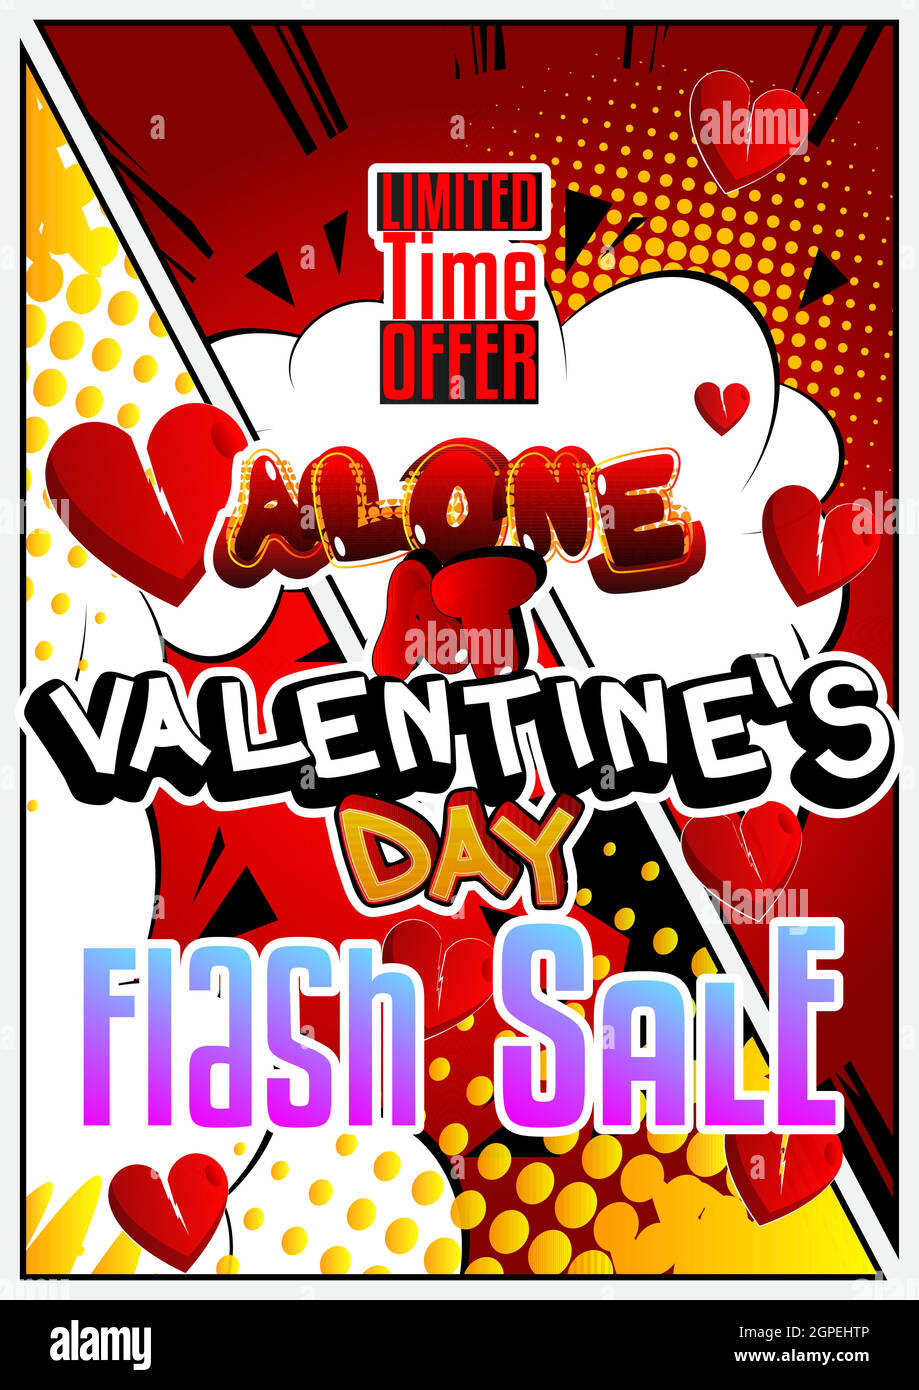 Vorlage für den Verkauf von Postern zum Thema Einsamkeit am Valentinstag. Stock Vektor